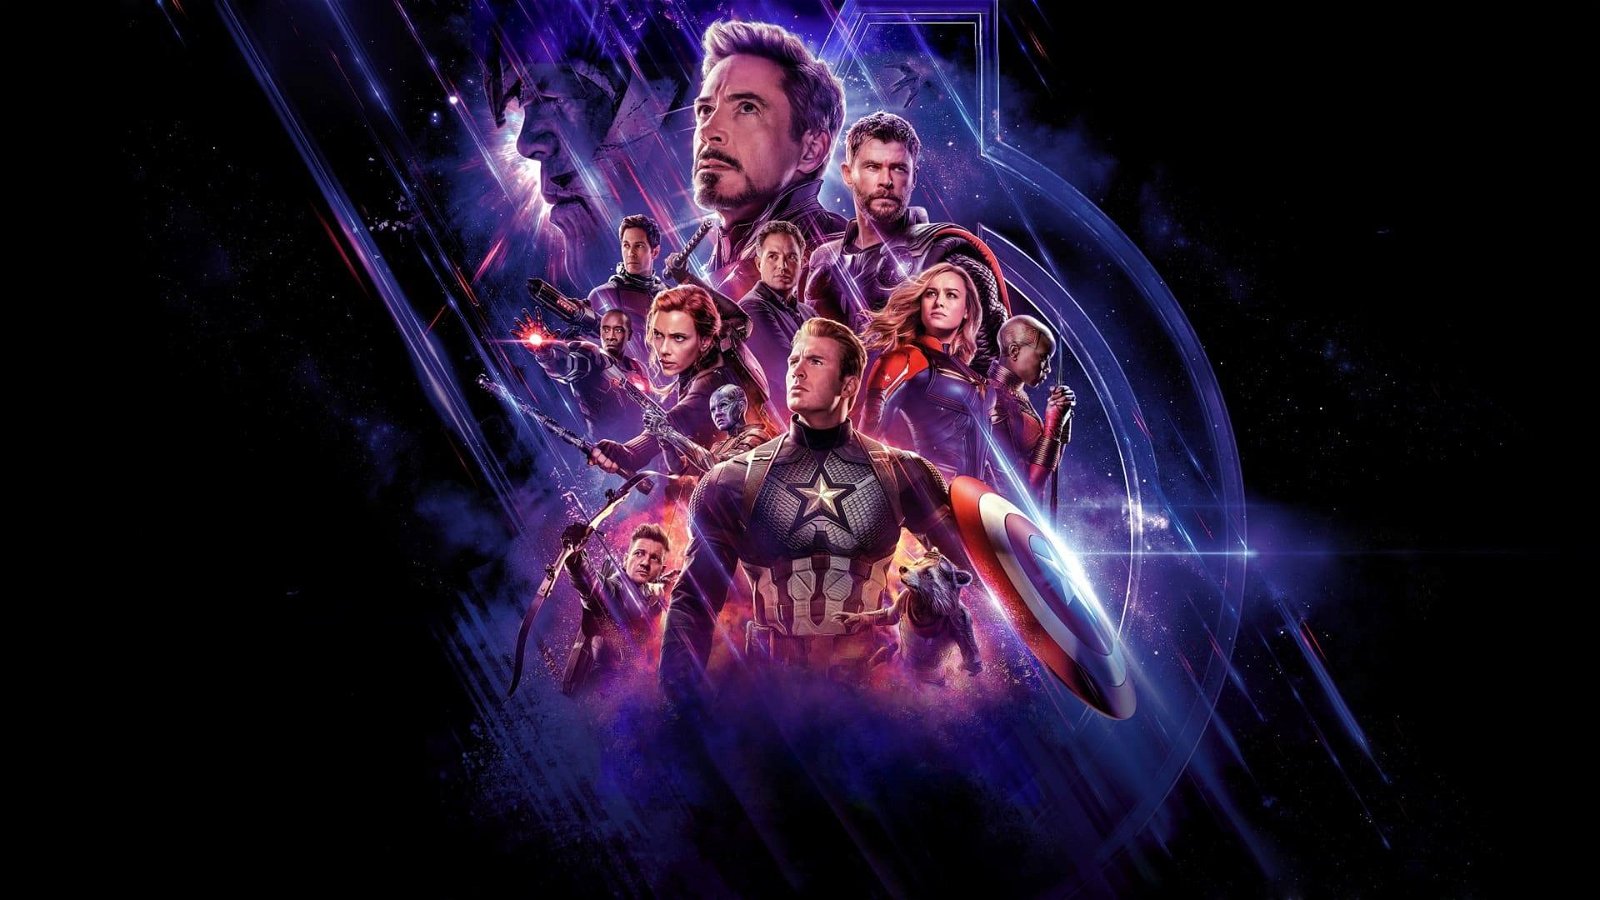 Immagine di Avengers: Endgame: cosa contiene di inedito l'Home Video?